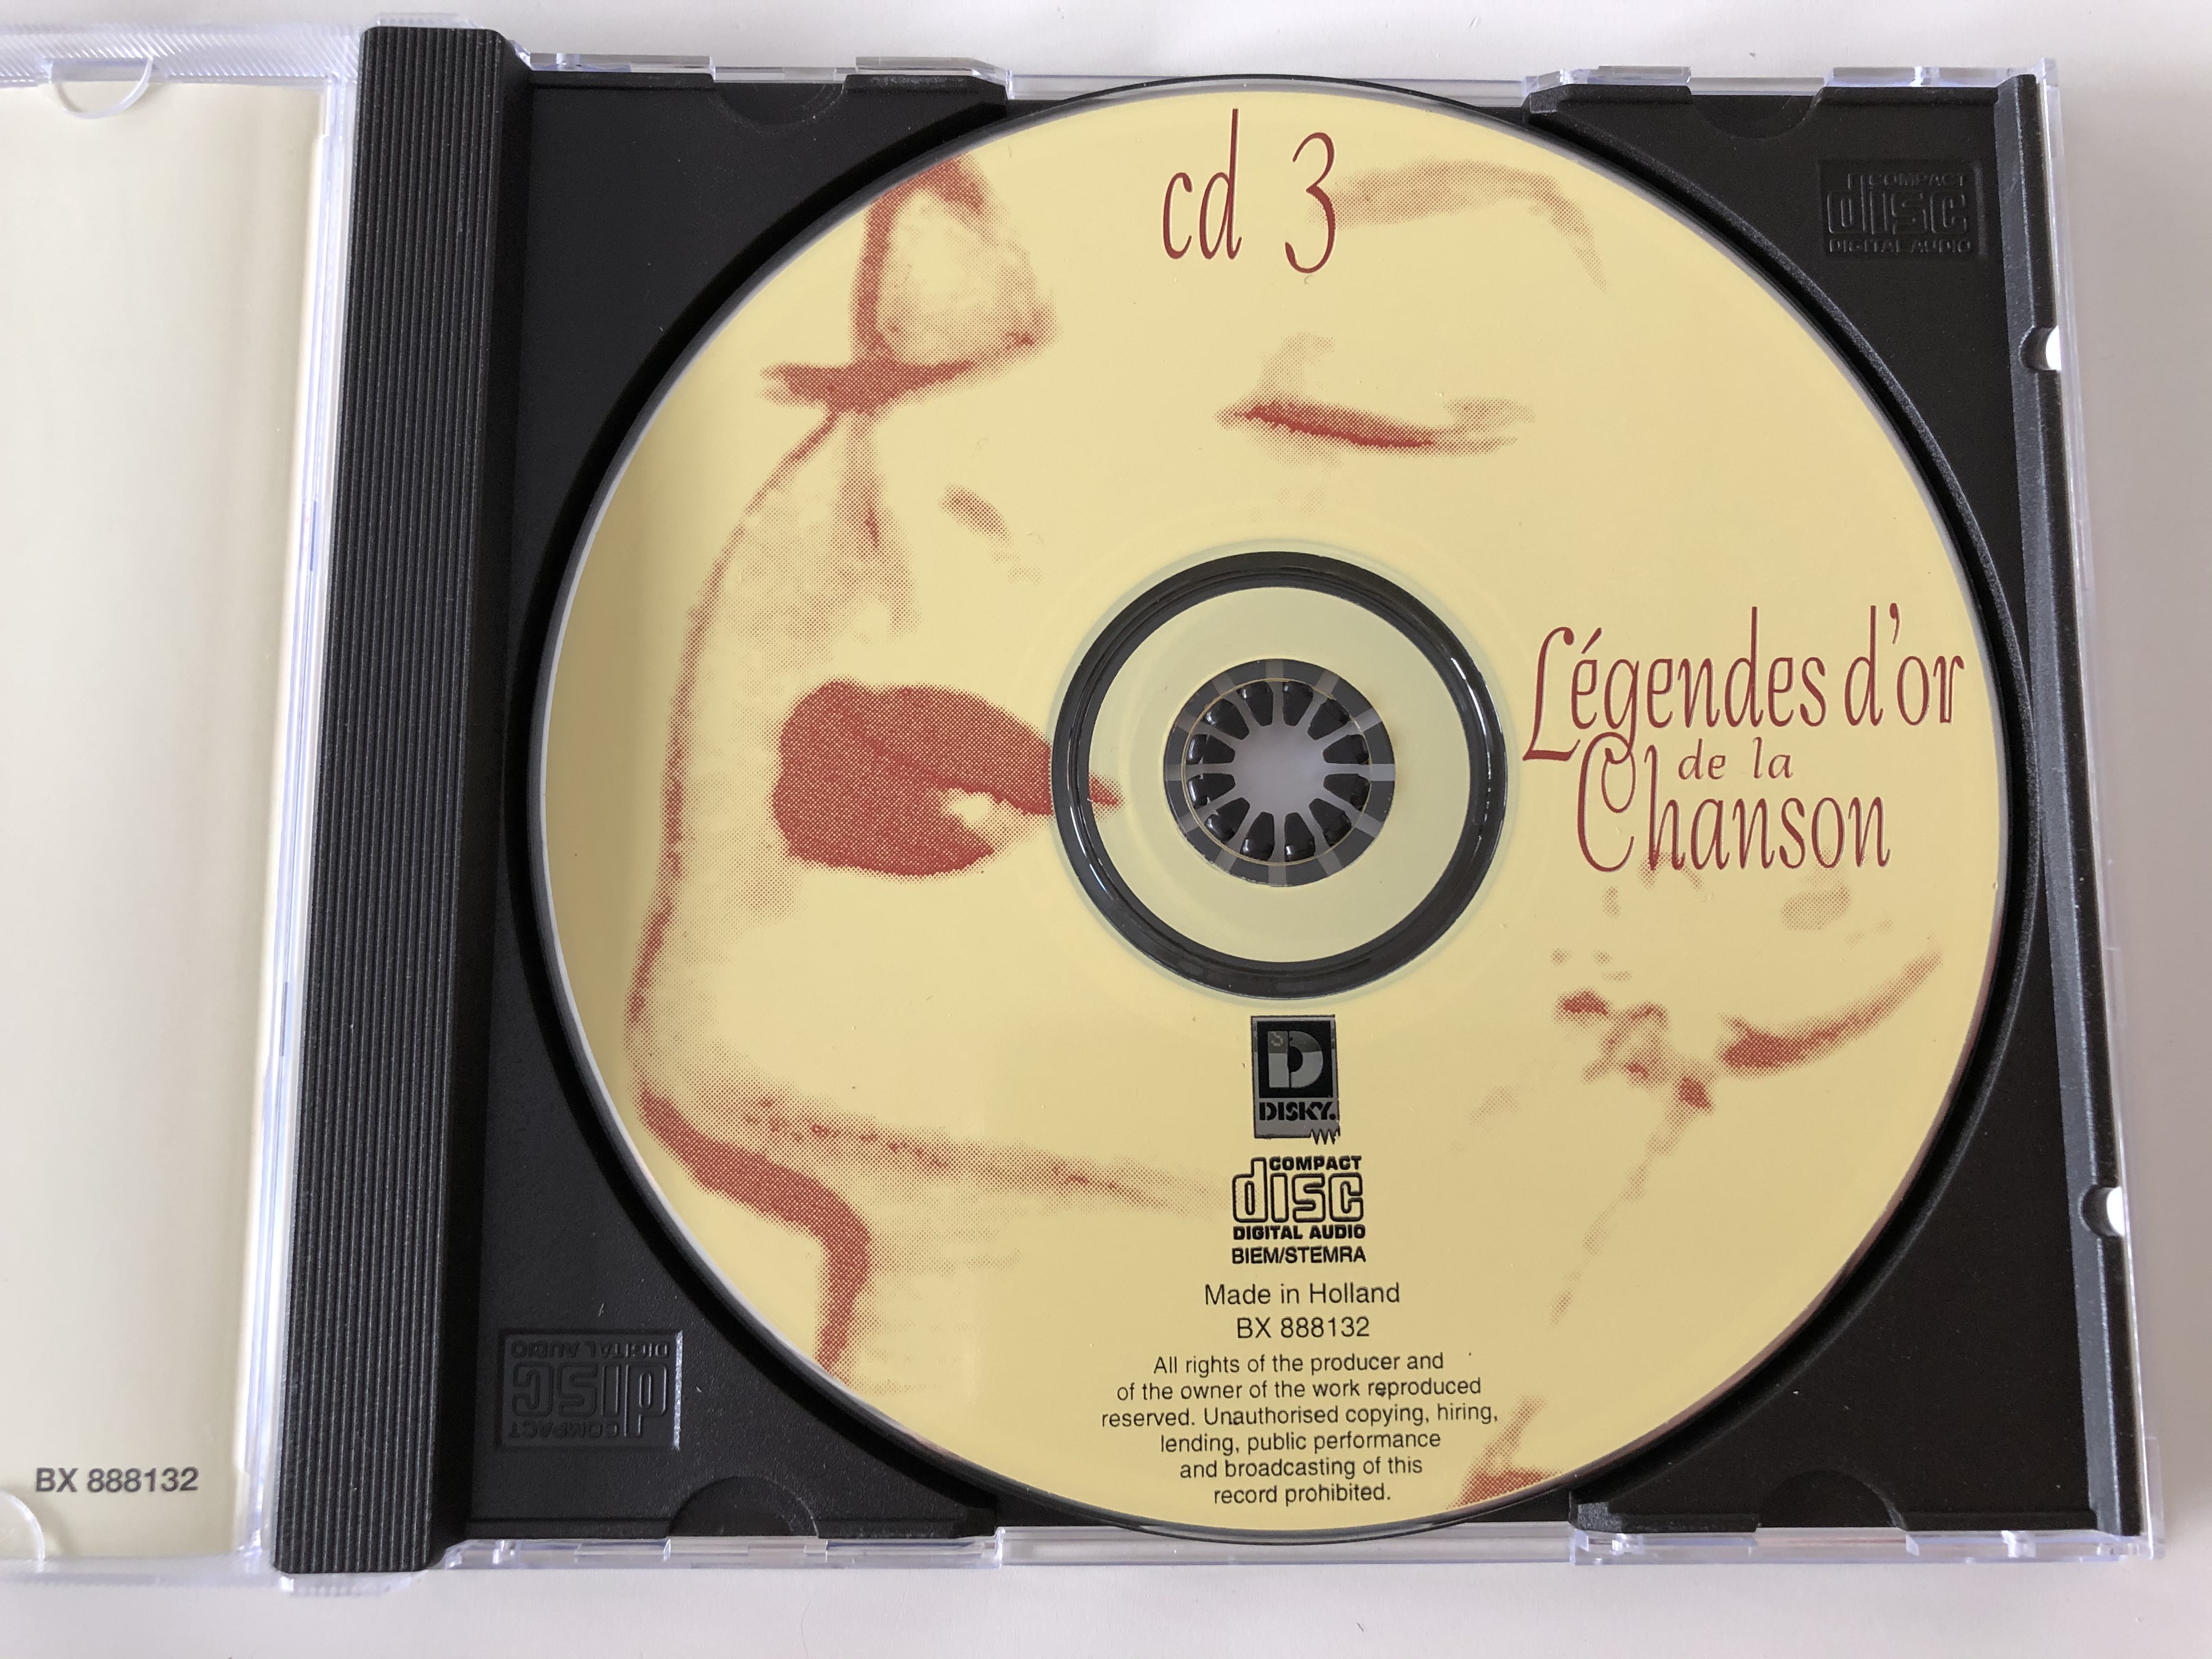 l-gendes-d-or-de-la-chanson-lys-gauty-lucienne-delyle-mistinguett-leo-marjane-gloria-lasso-cd-3-disky-audio-cd-1998-bx-888132-3-.jpg